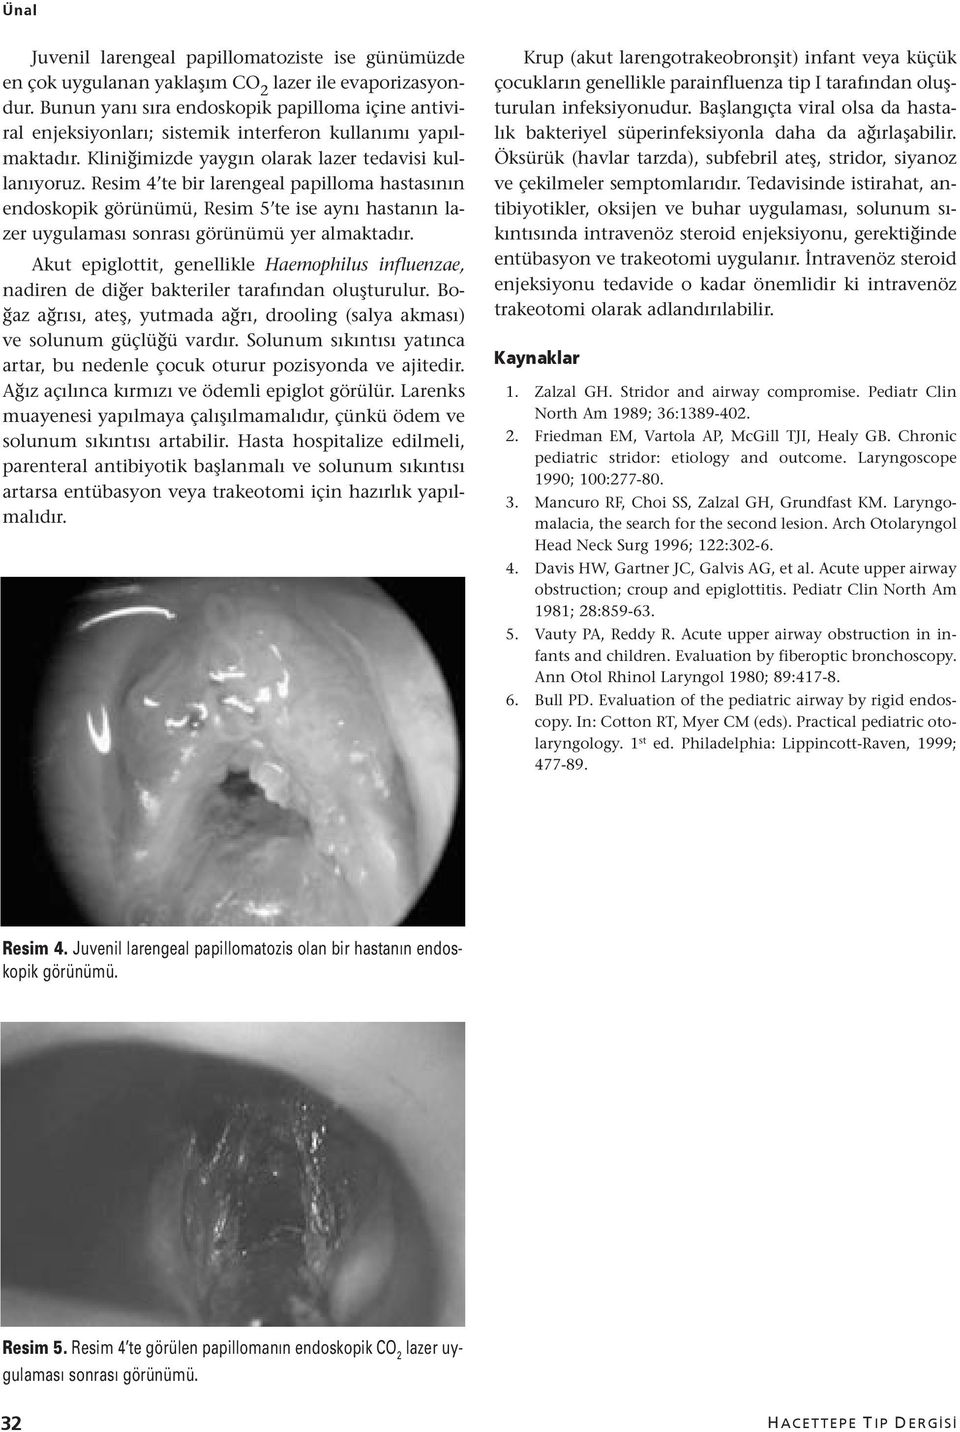 Resim 4 te bir larengeal papilloma hastasının endoskopik görünümü, Resim 5 te ise aynı hastanın lazer uygulaması sonrası görünümü yer almaktadır.